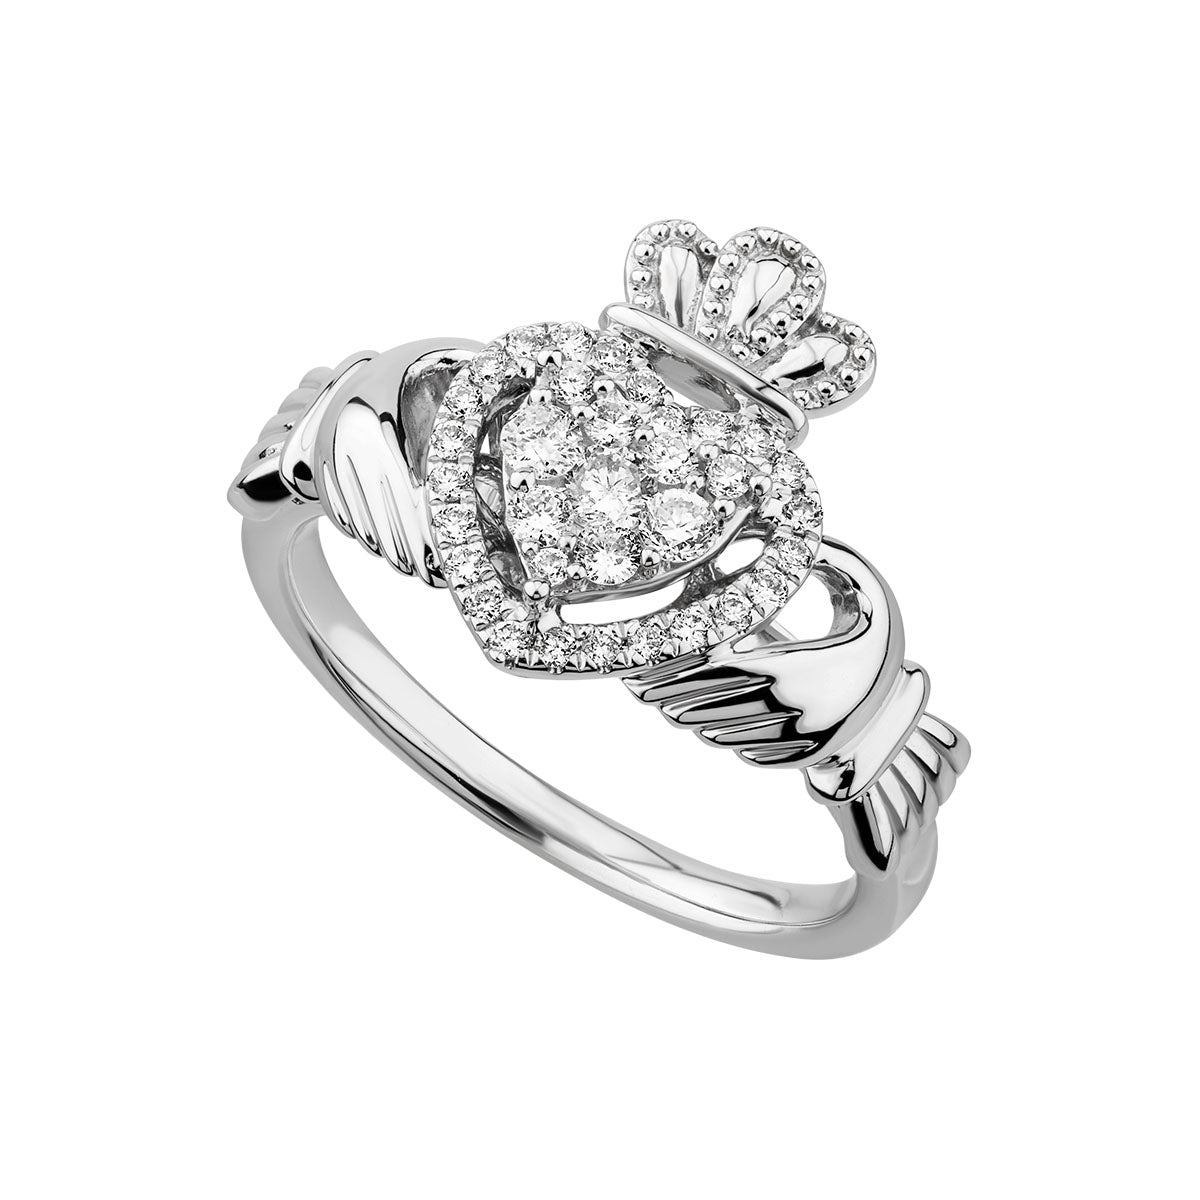 14k white gold diamond heart claddagh ring s21097 from Solvar